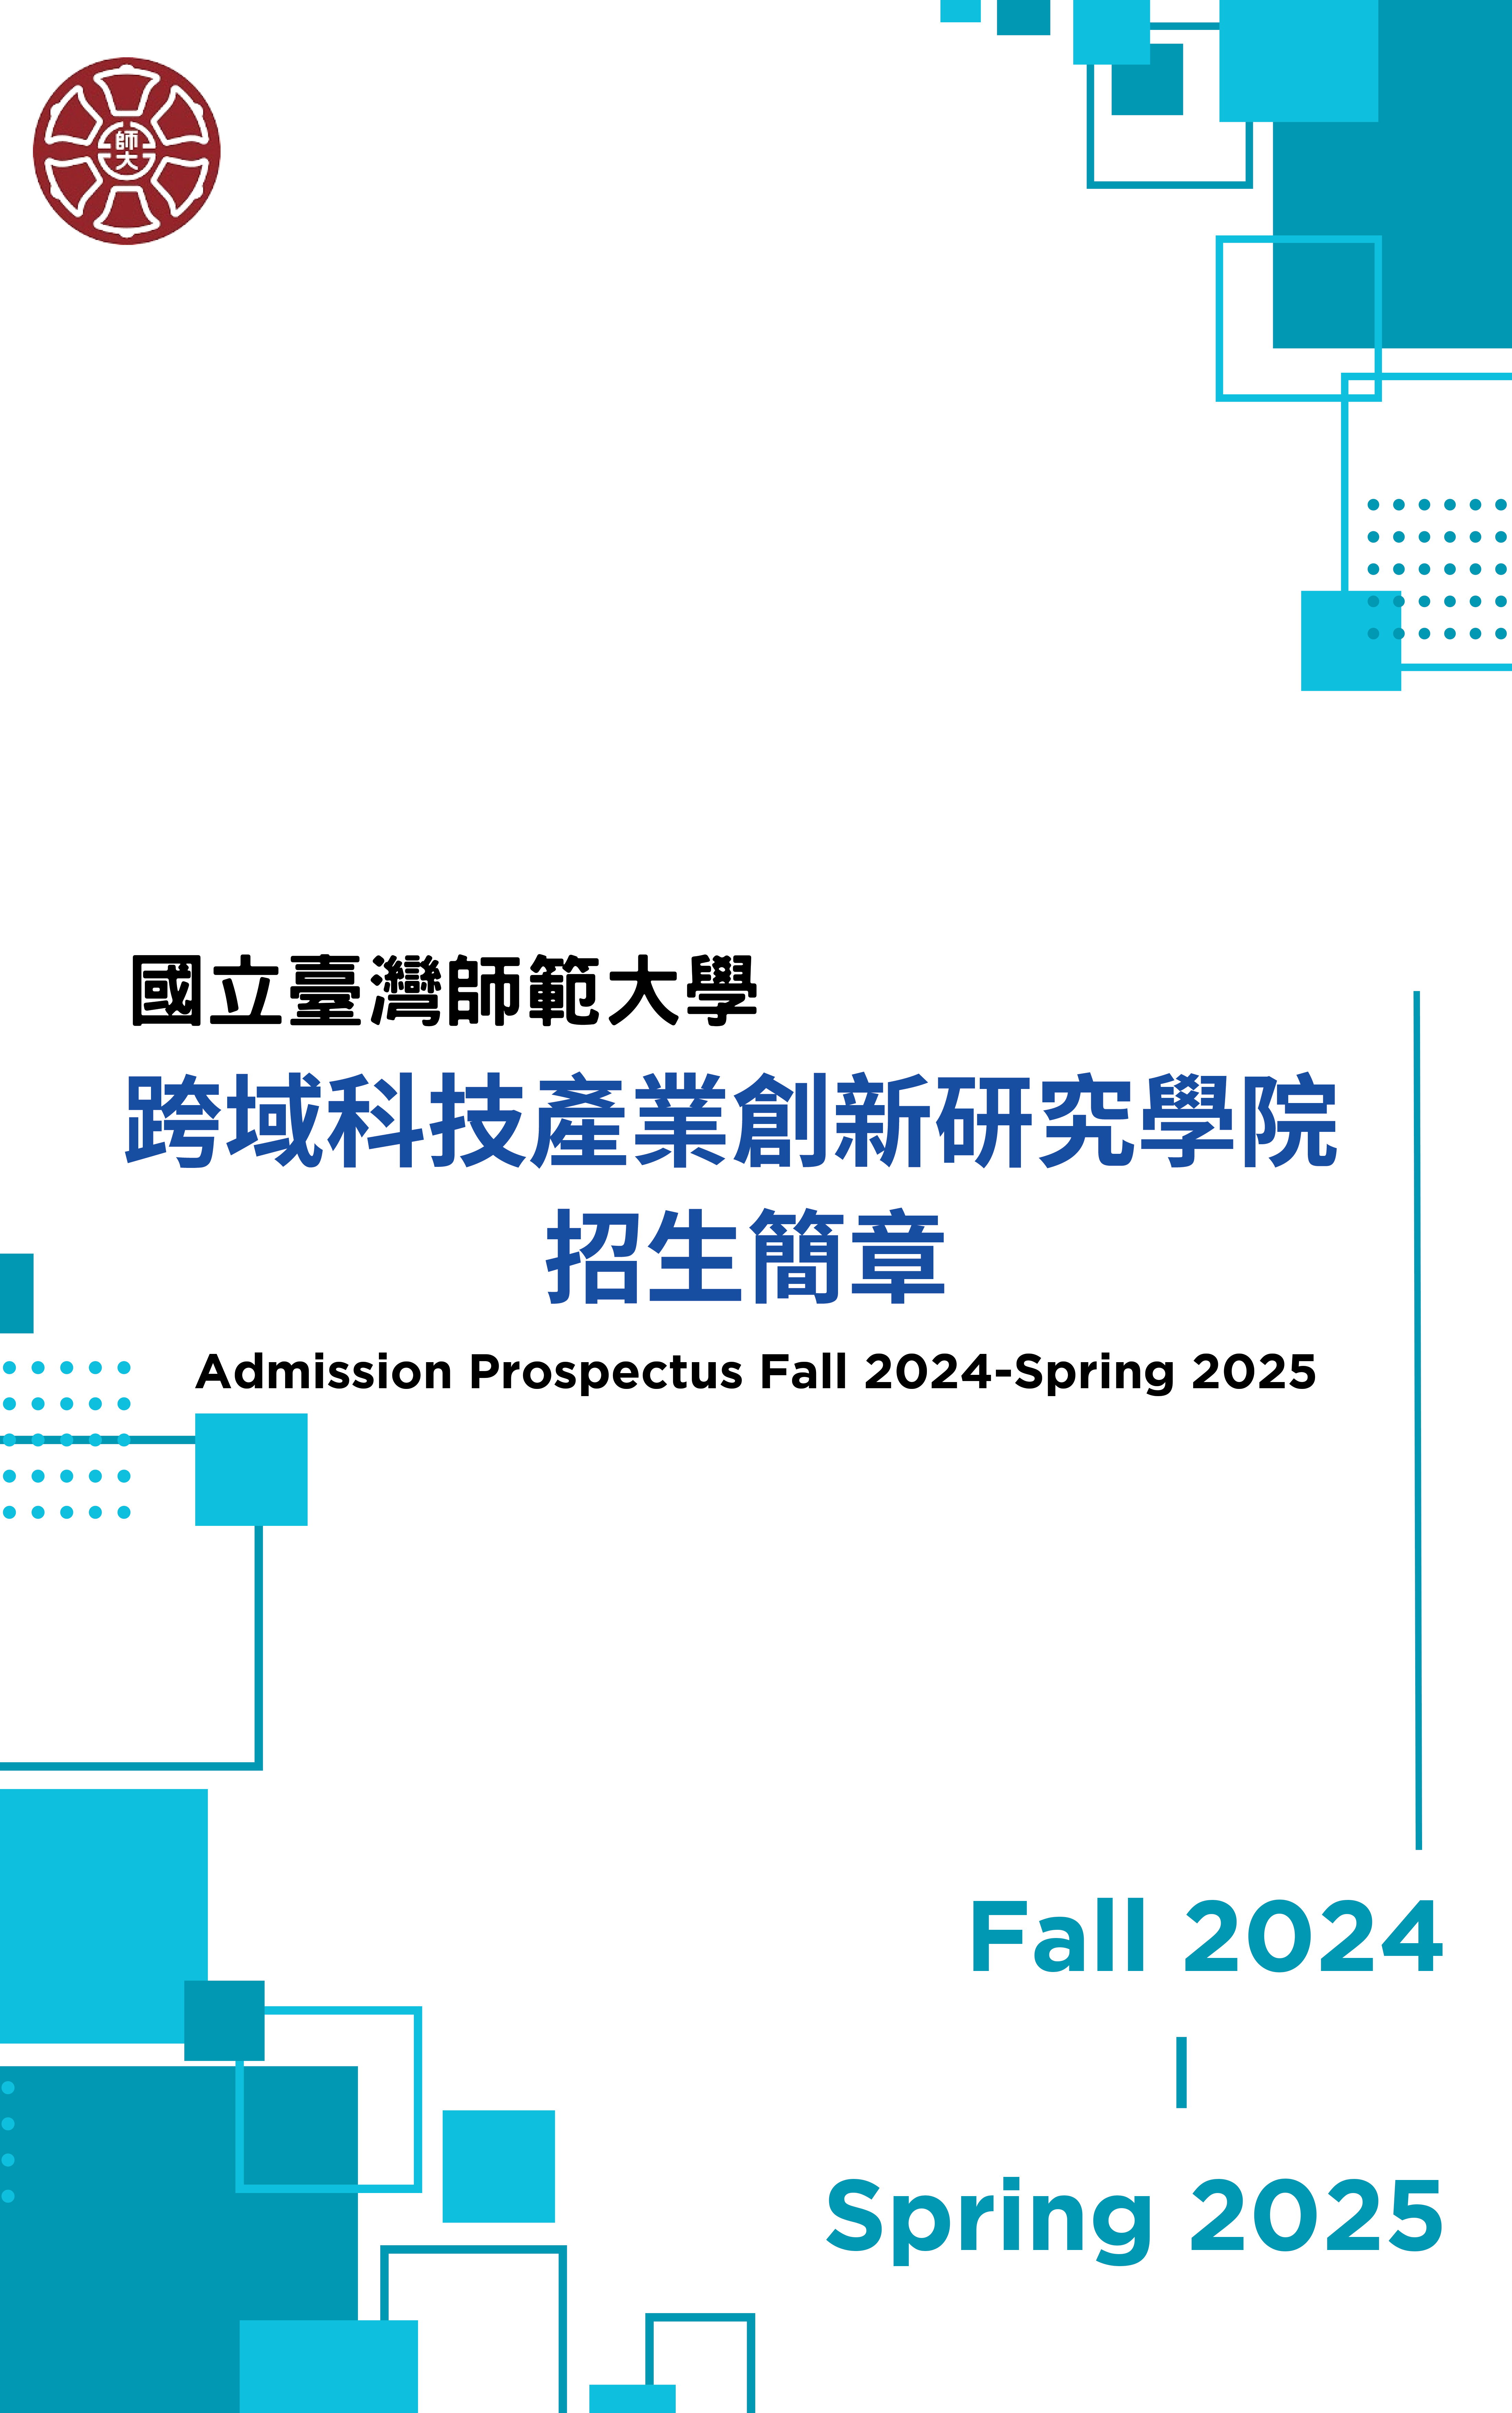 臺師大跨域科技產業創新研究學院招生簡章Fall_2024-Spring_2025-1.png